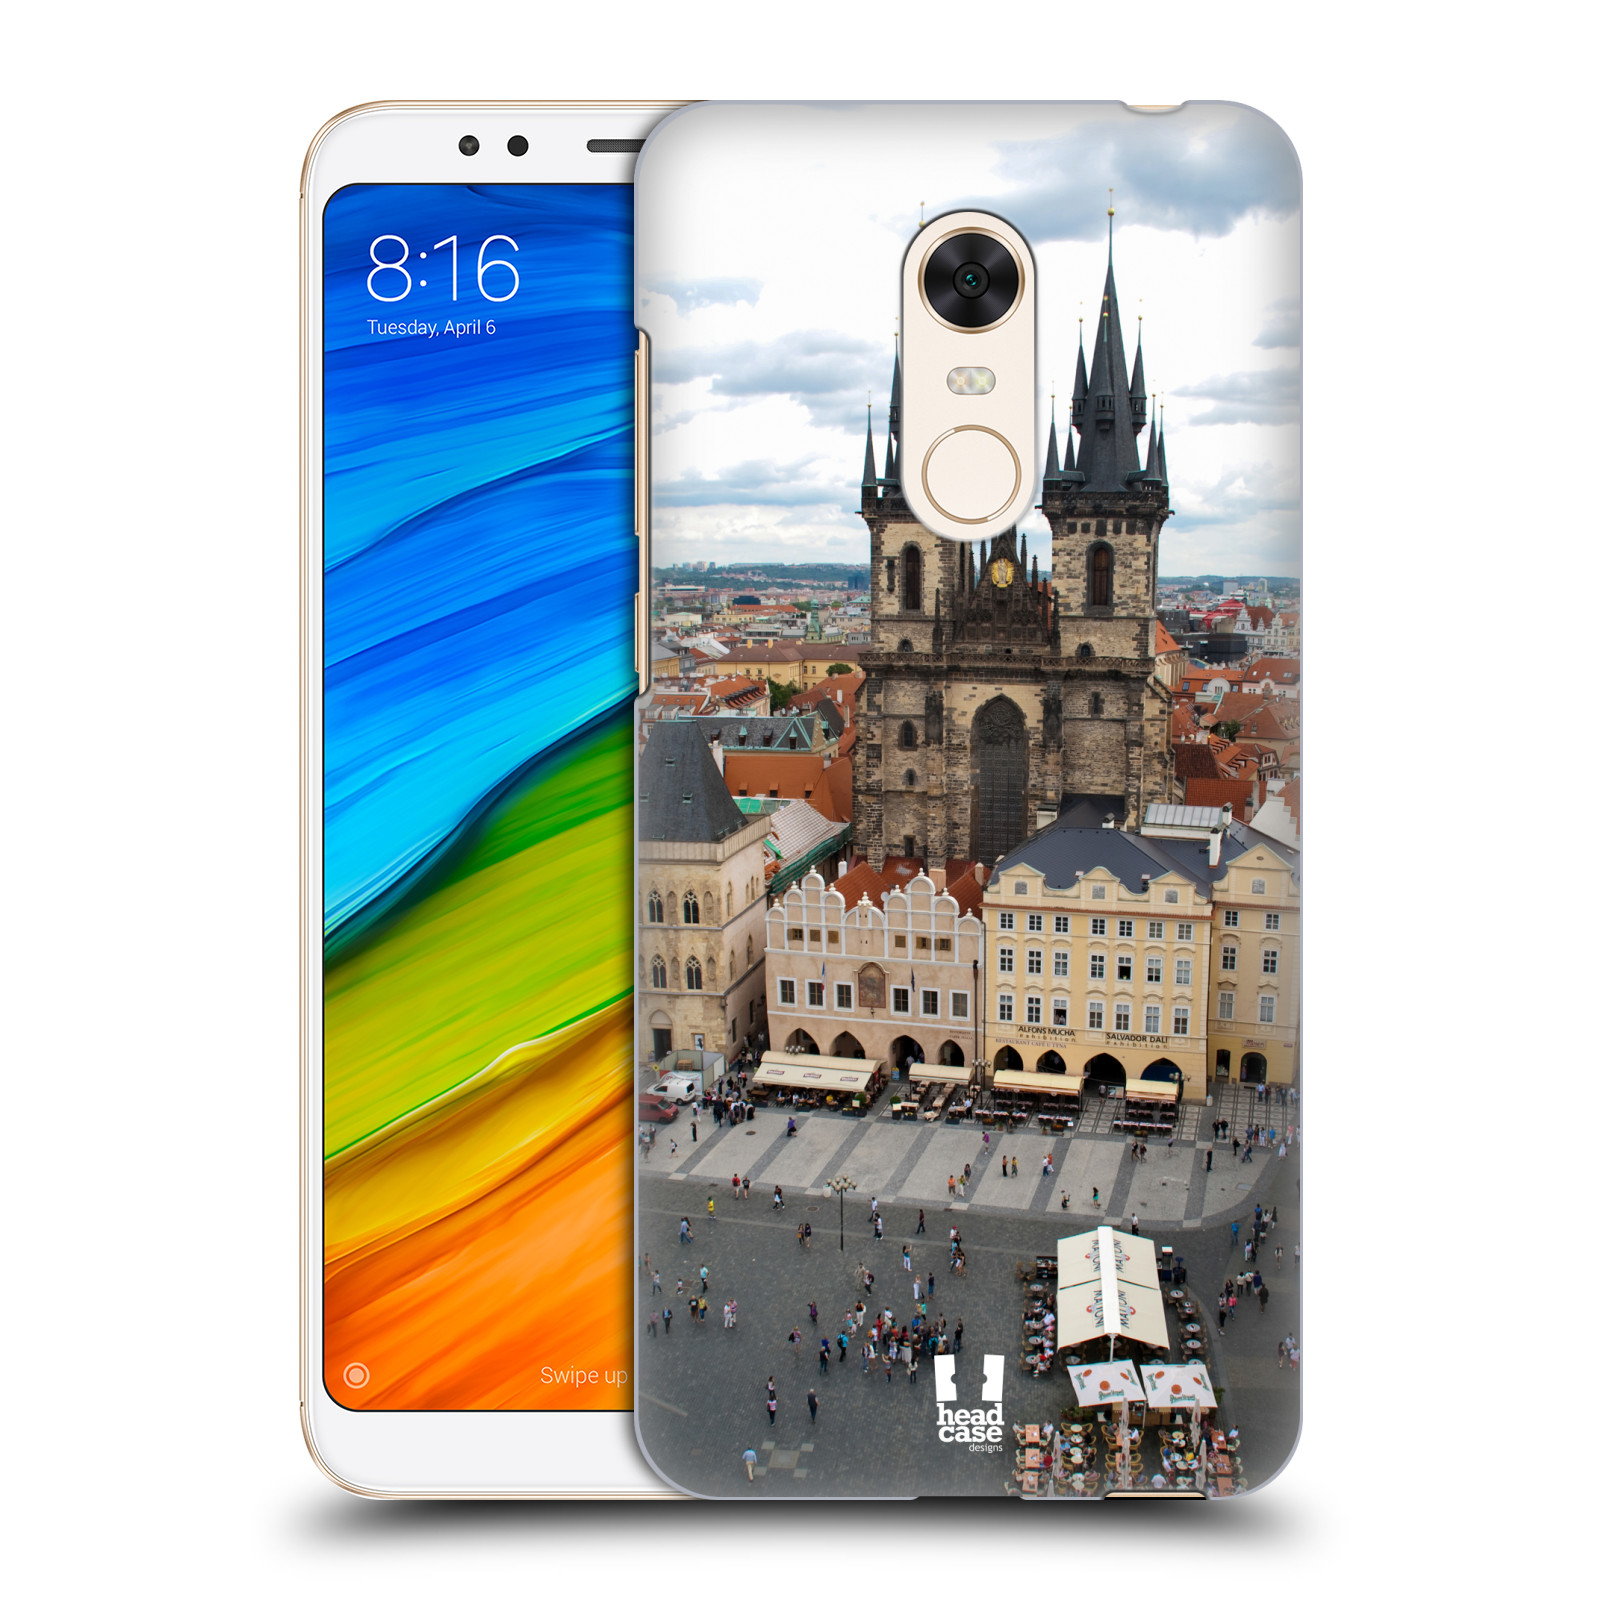 HEAD CASE plastový obal na mobil Xiaomi Redmi 5 PLUS vzor Města foto náměstí ČESKÁ REPUBLIKA, PRAHA, STAROMĚSTSKÉ NÁMĚSTÍ